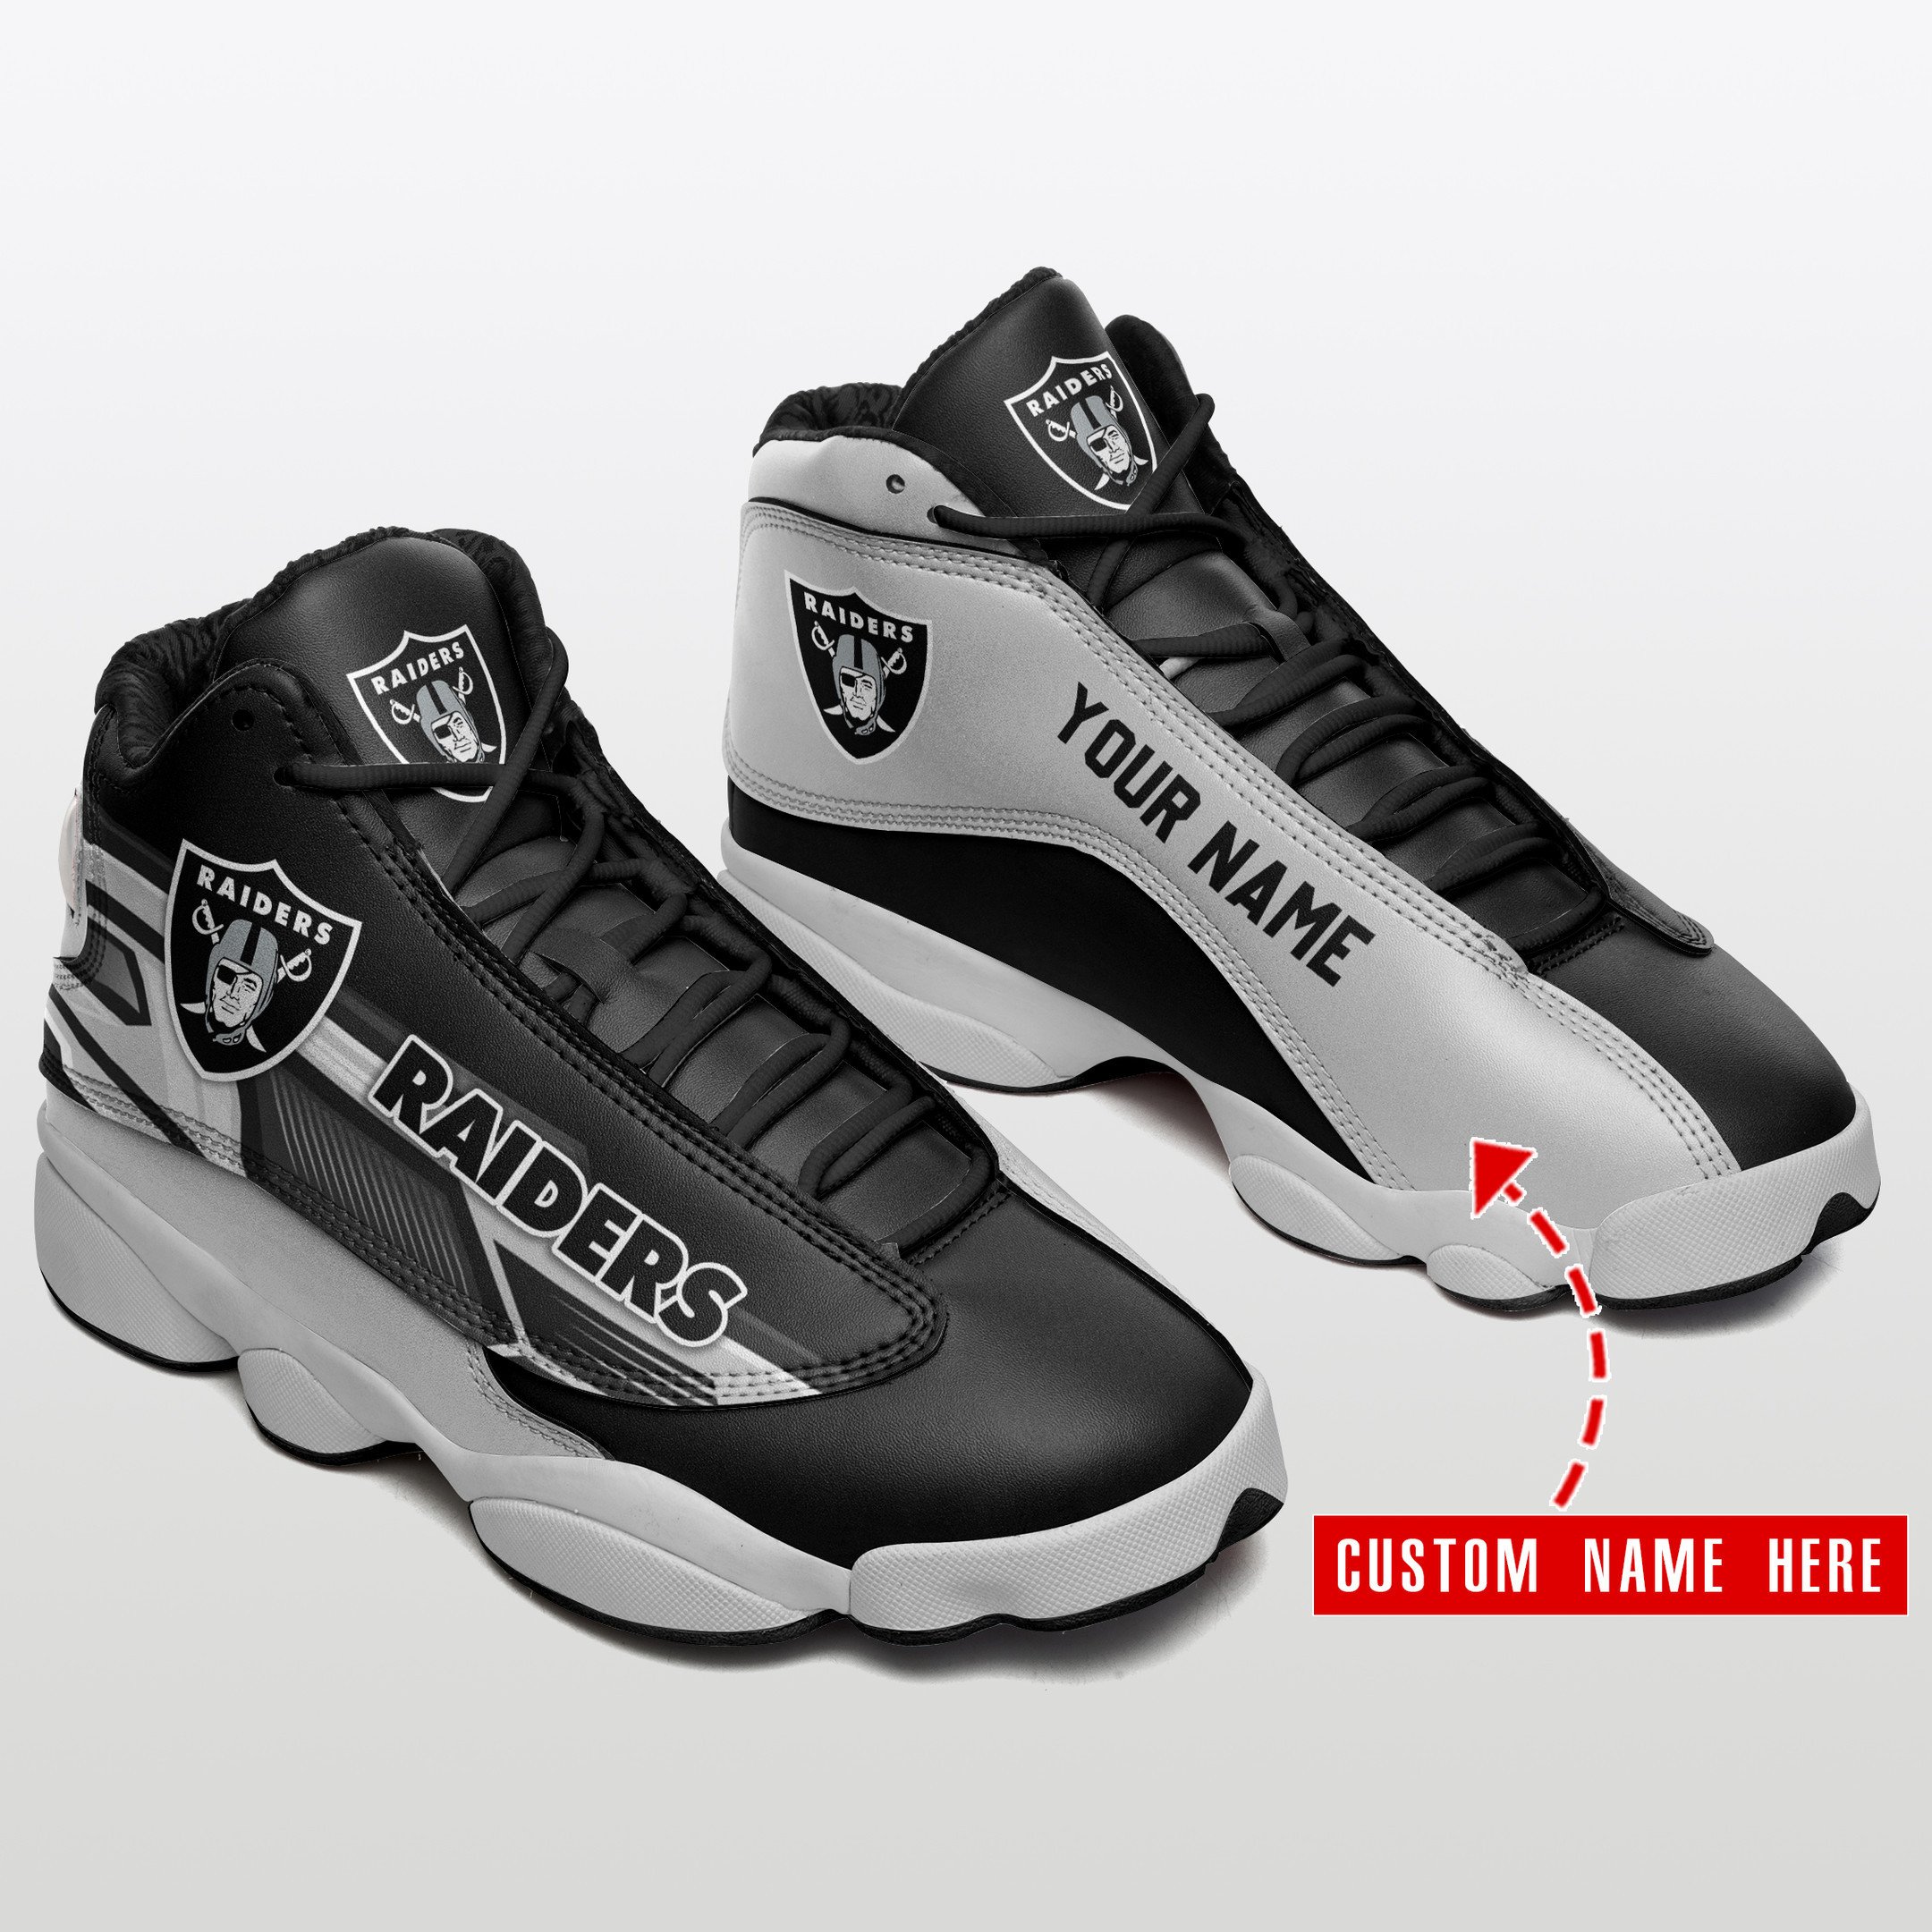 Las vegas raiders personalize air jordan 13 custom name shoes